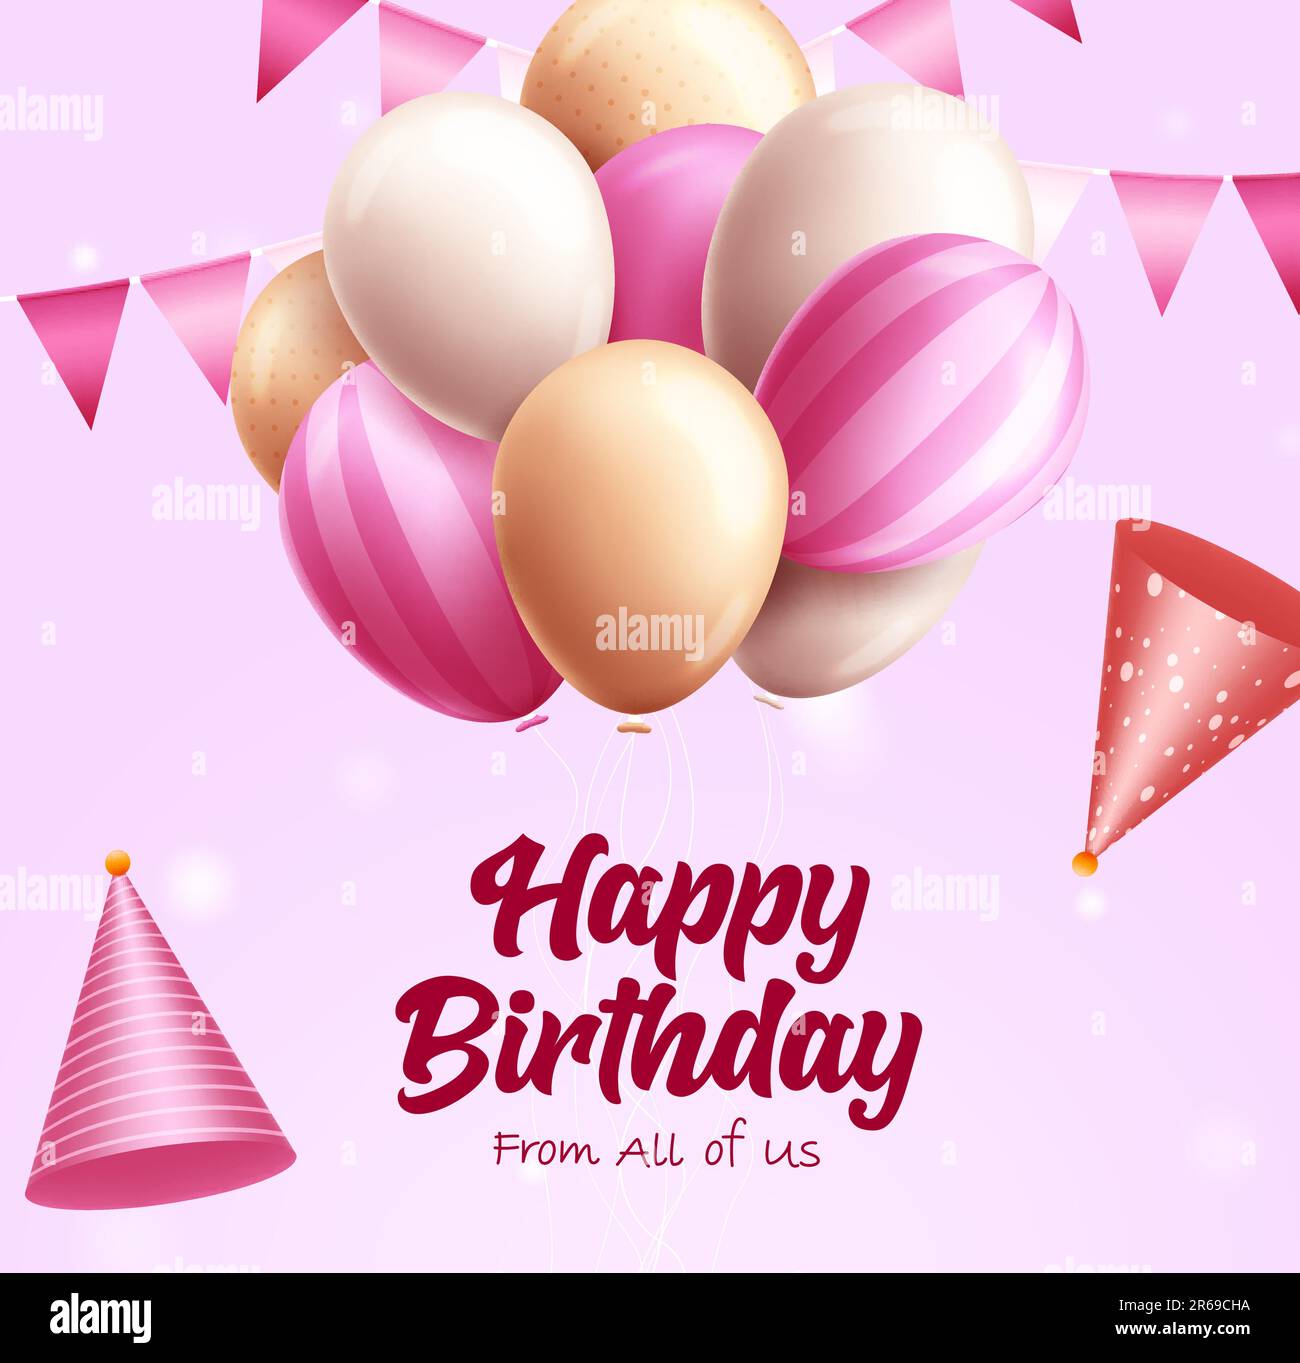 Disegno vettoriale di palloncini di compleanno. Buon compleanno testo con mazzo di palloncino rosa e bianco per la celebrazione del debutto delle ragazze. Messaggio di saluto con illustrazione vettoriale Illustrazione Vettoriale